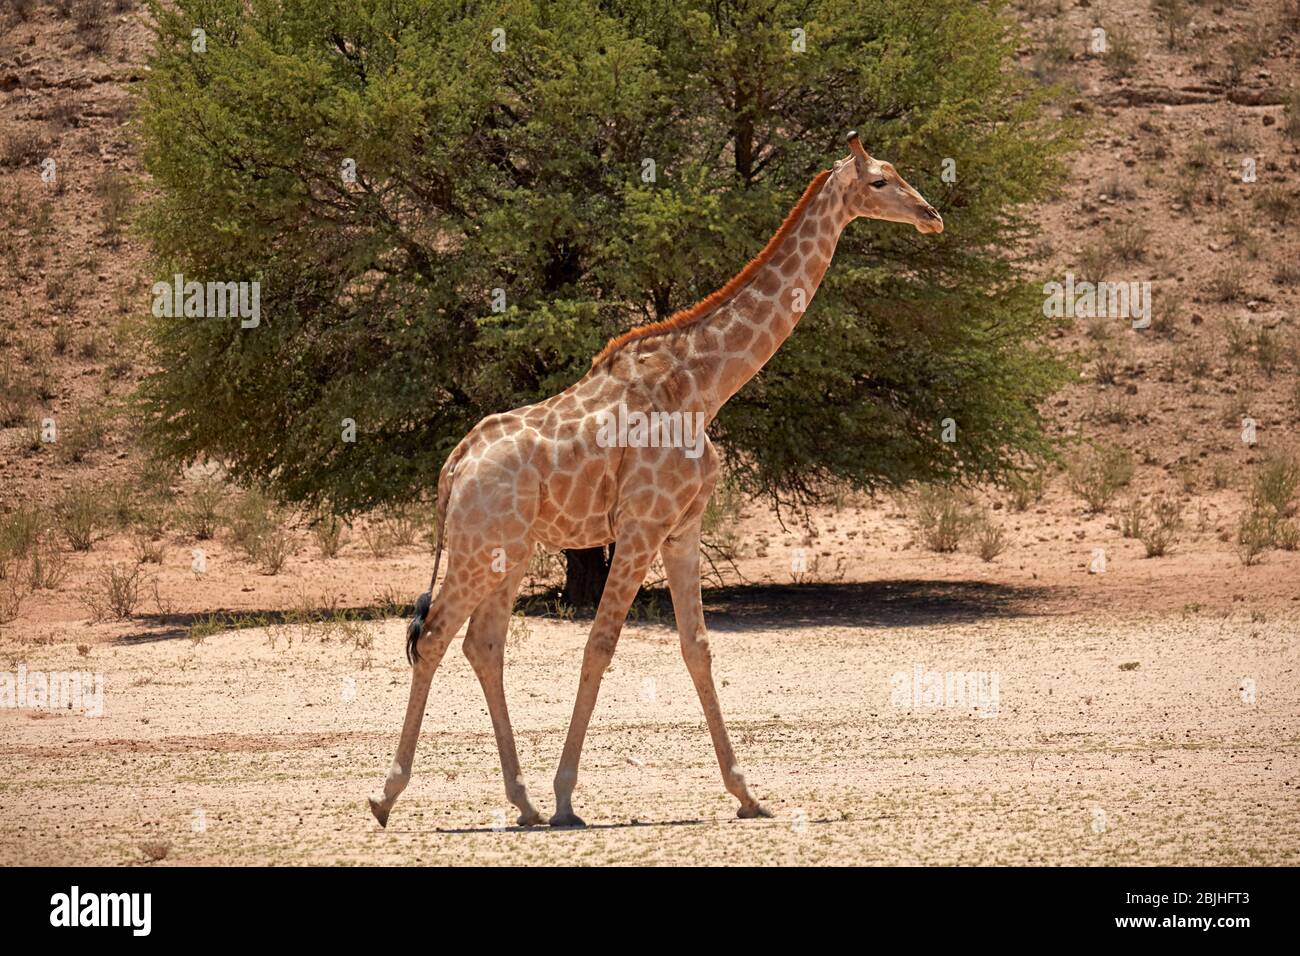 Giraffe (Giraffa camelopardalis angolensis), Kgalagadi Transfrontier Park, South Africa Stock Photo